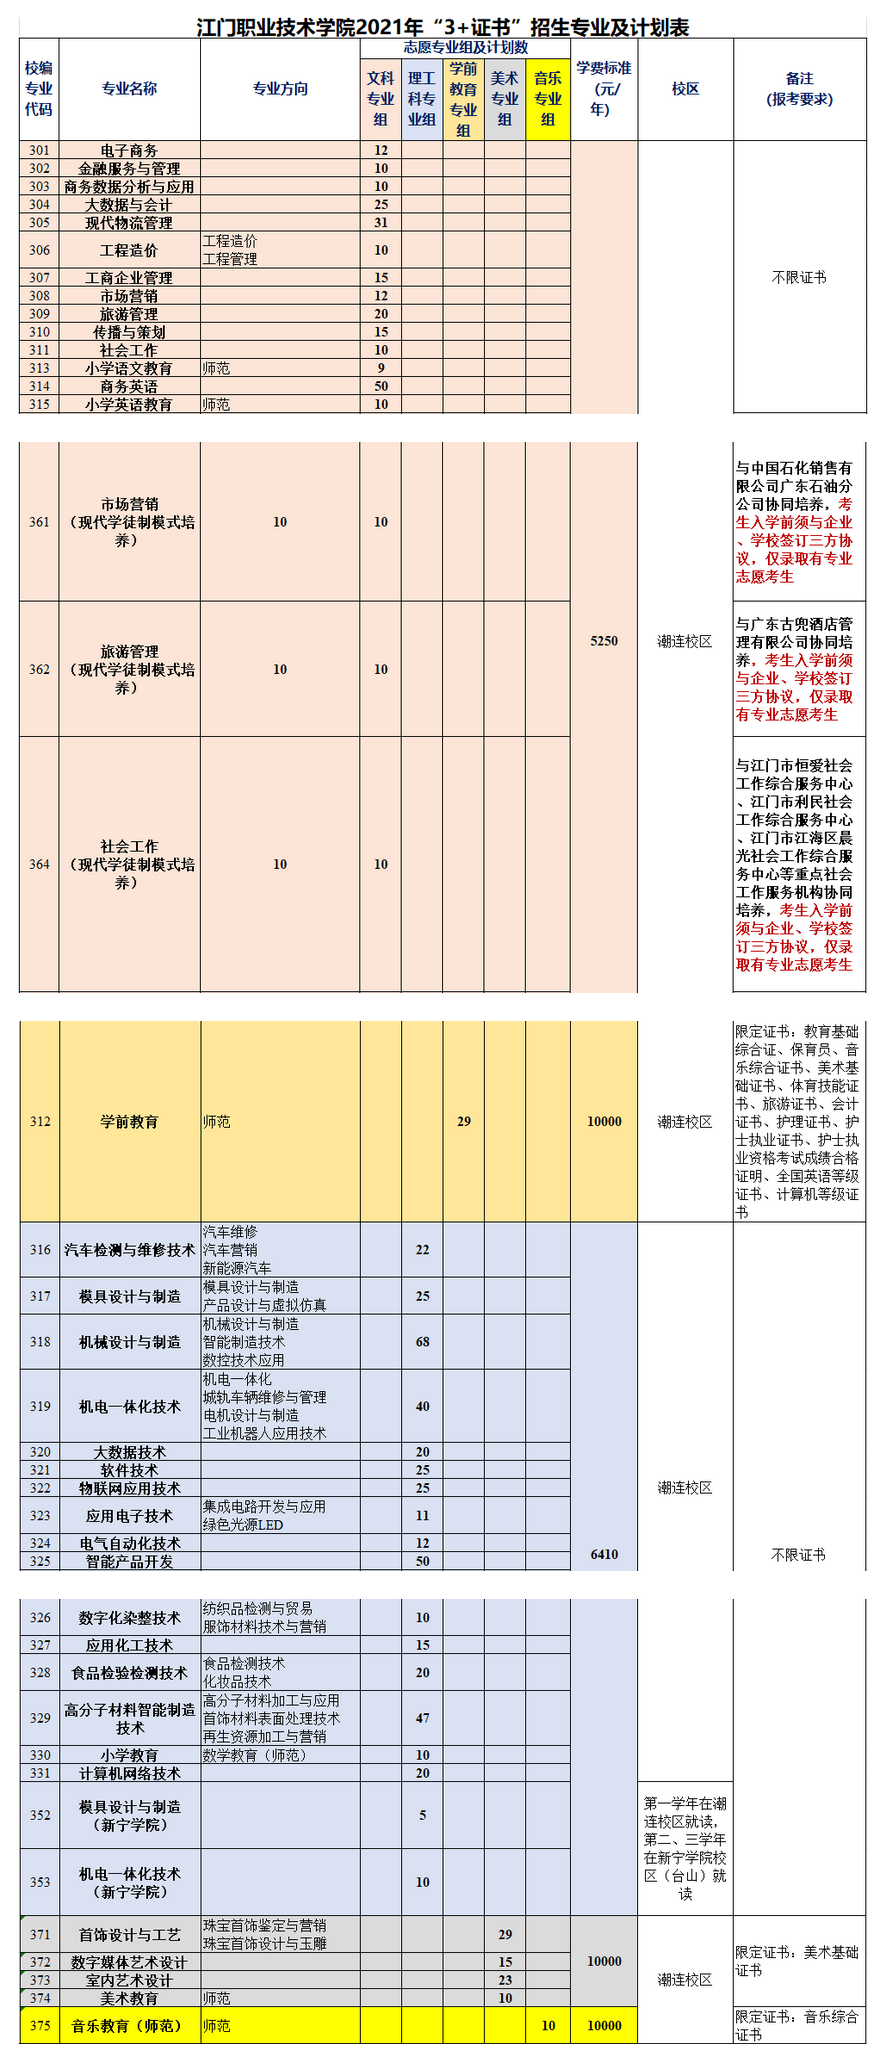 2021年江门职业技术学院3+证书(高职高考)招生计划